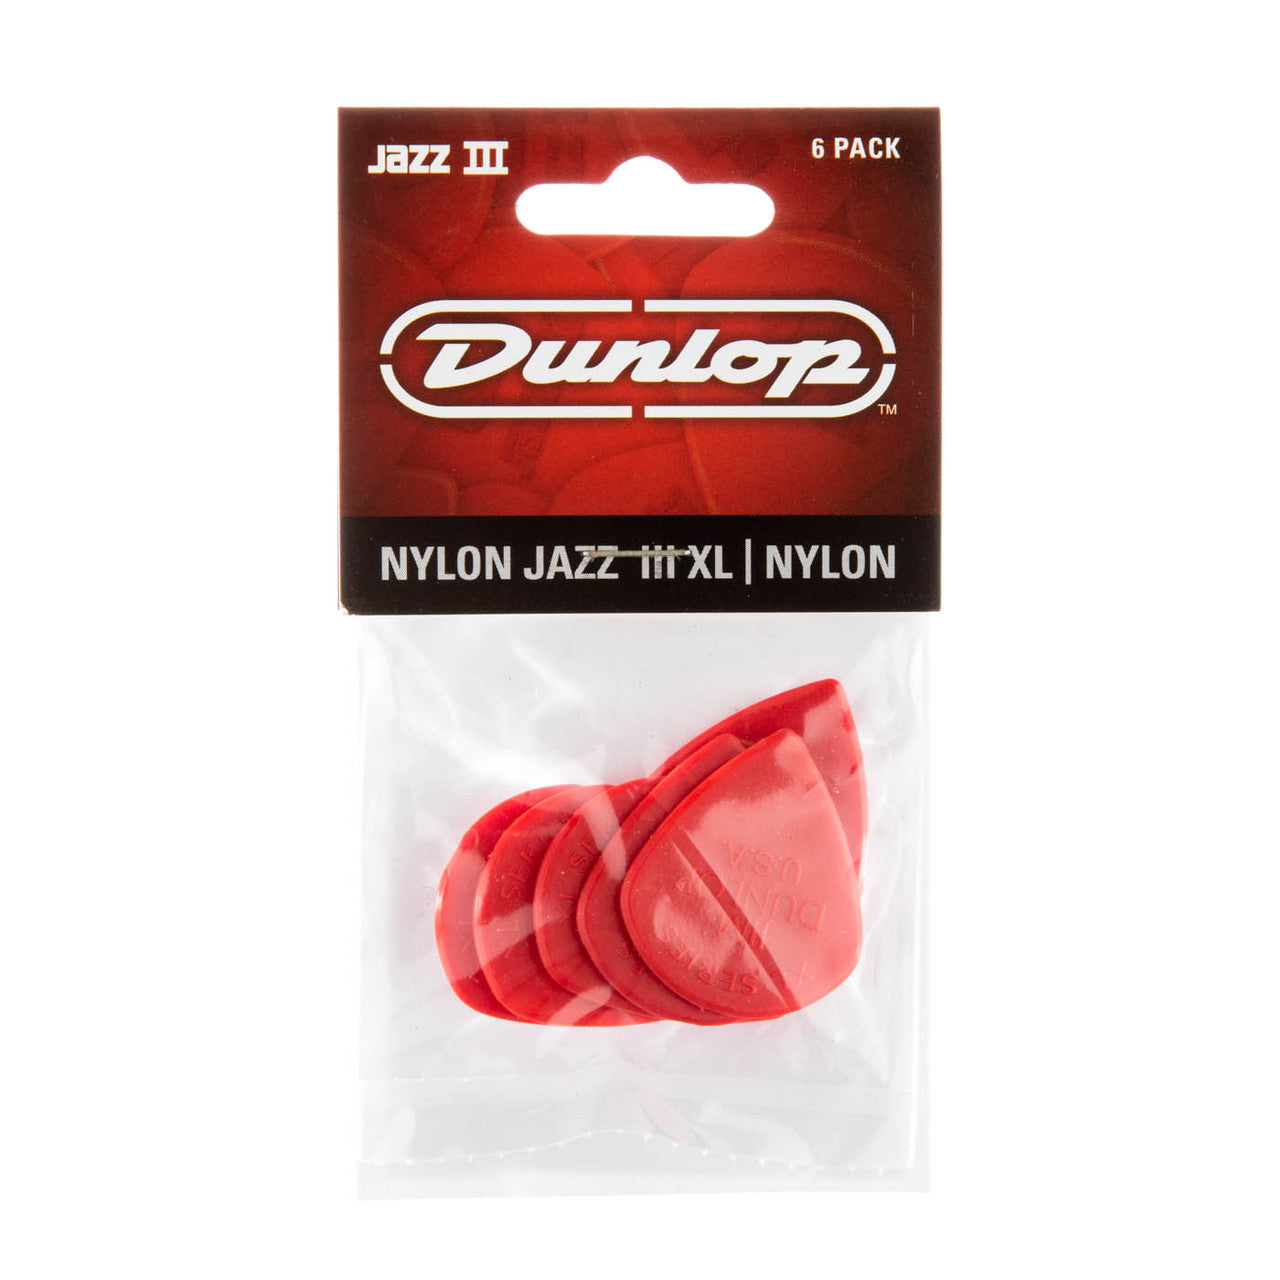 Jim Dunlop JP5XLN Jazz III XL 6 pack Red